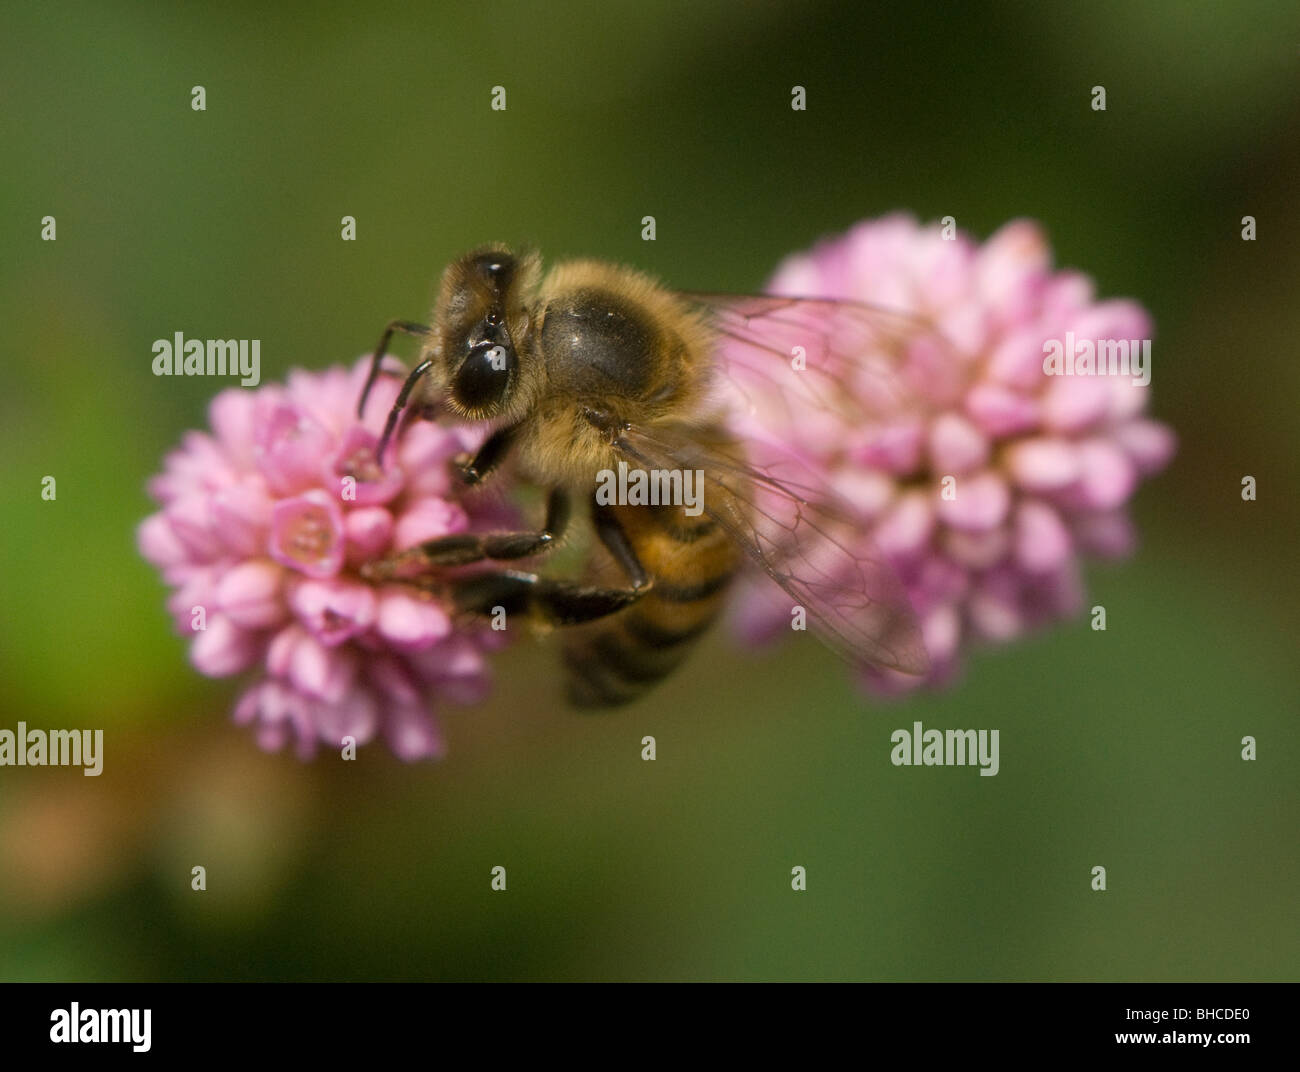 Afrikanische Honigbiene auf Nahrungssuche auf einer Blume, fotografiert in Tansania, Afrika. Stockfoto